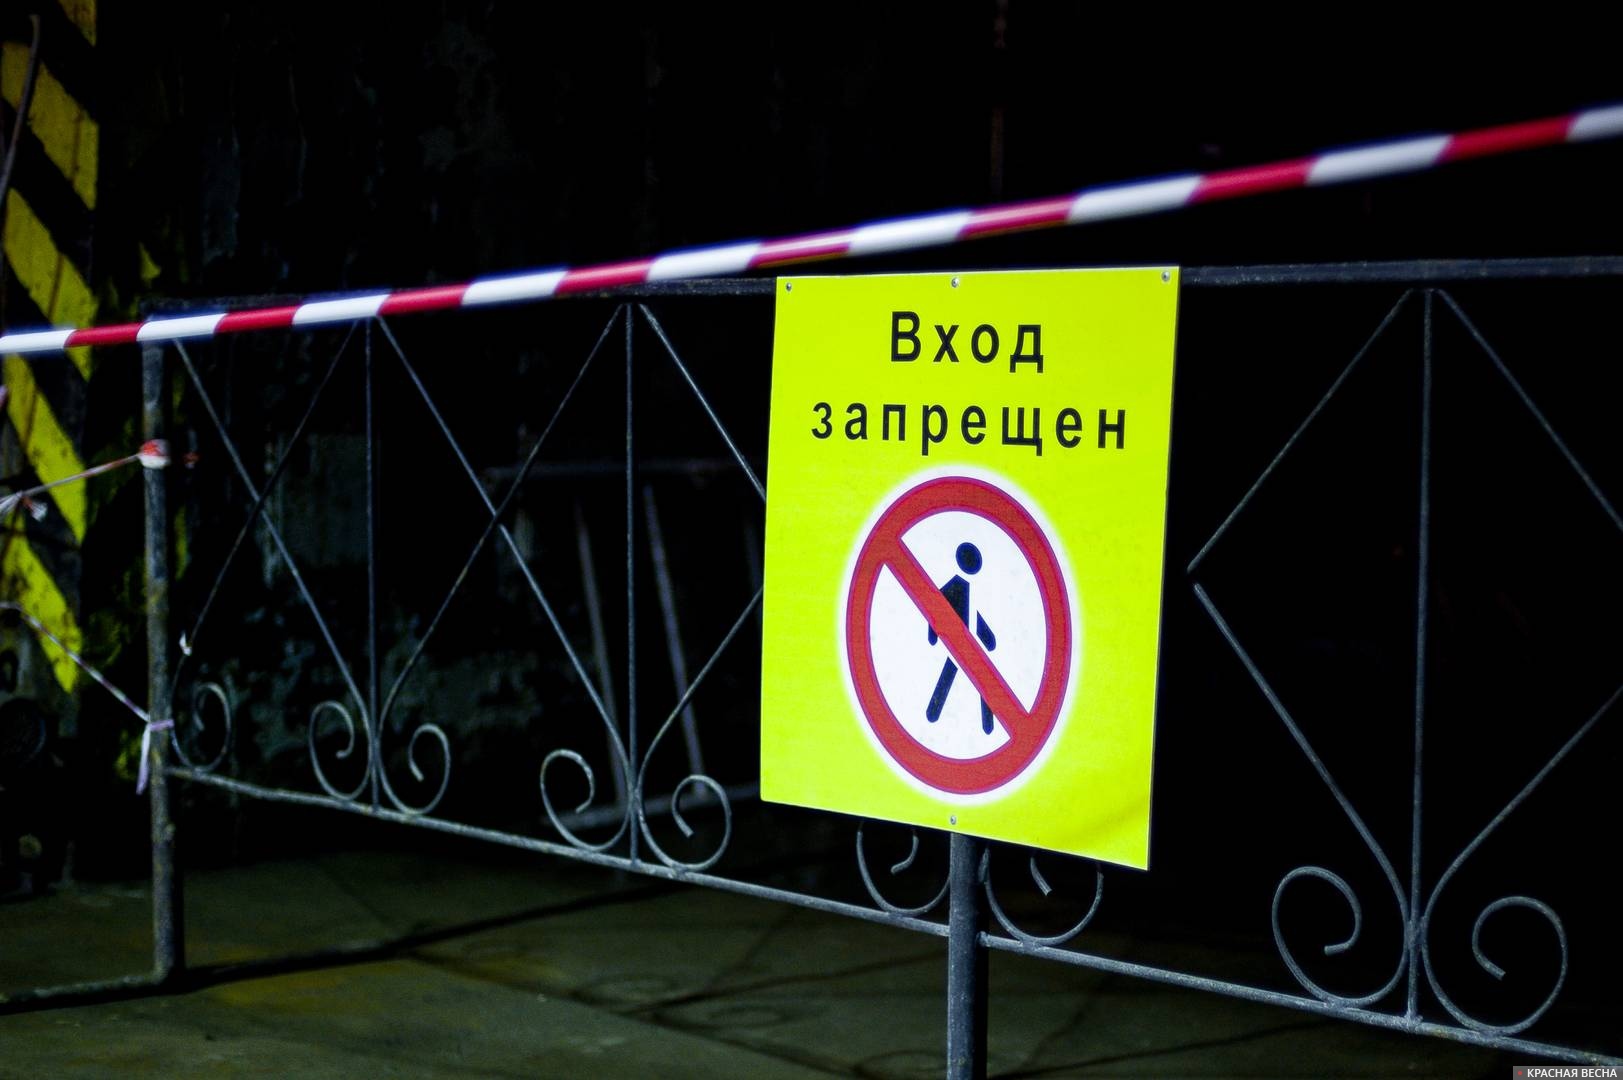 Украина запрет россия запрет. На территории запрещено. Запретили въезд российским. Цыганам вход запрещен знак. Яндексу вход запрещен.